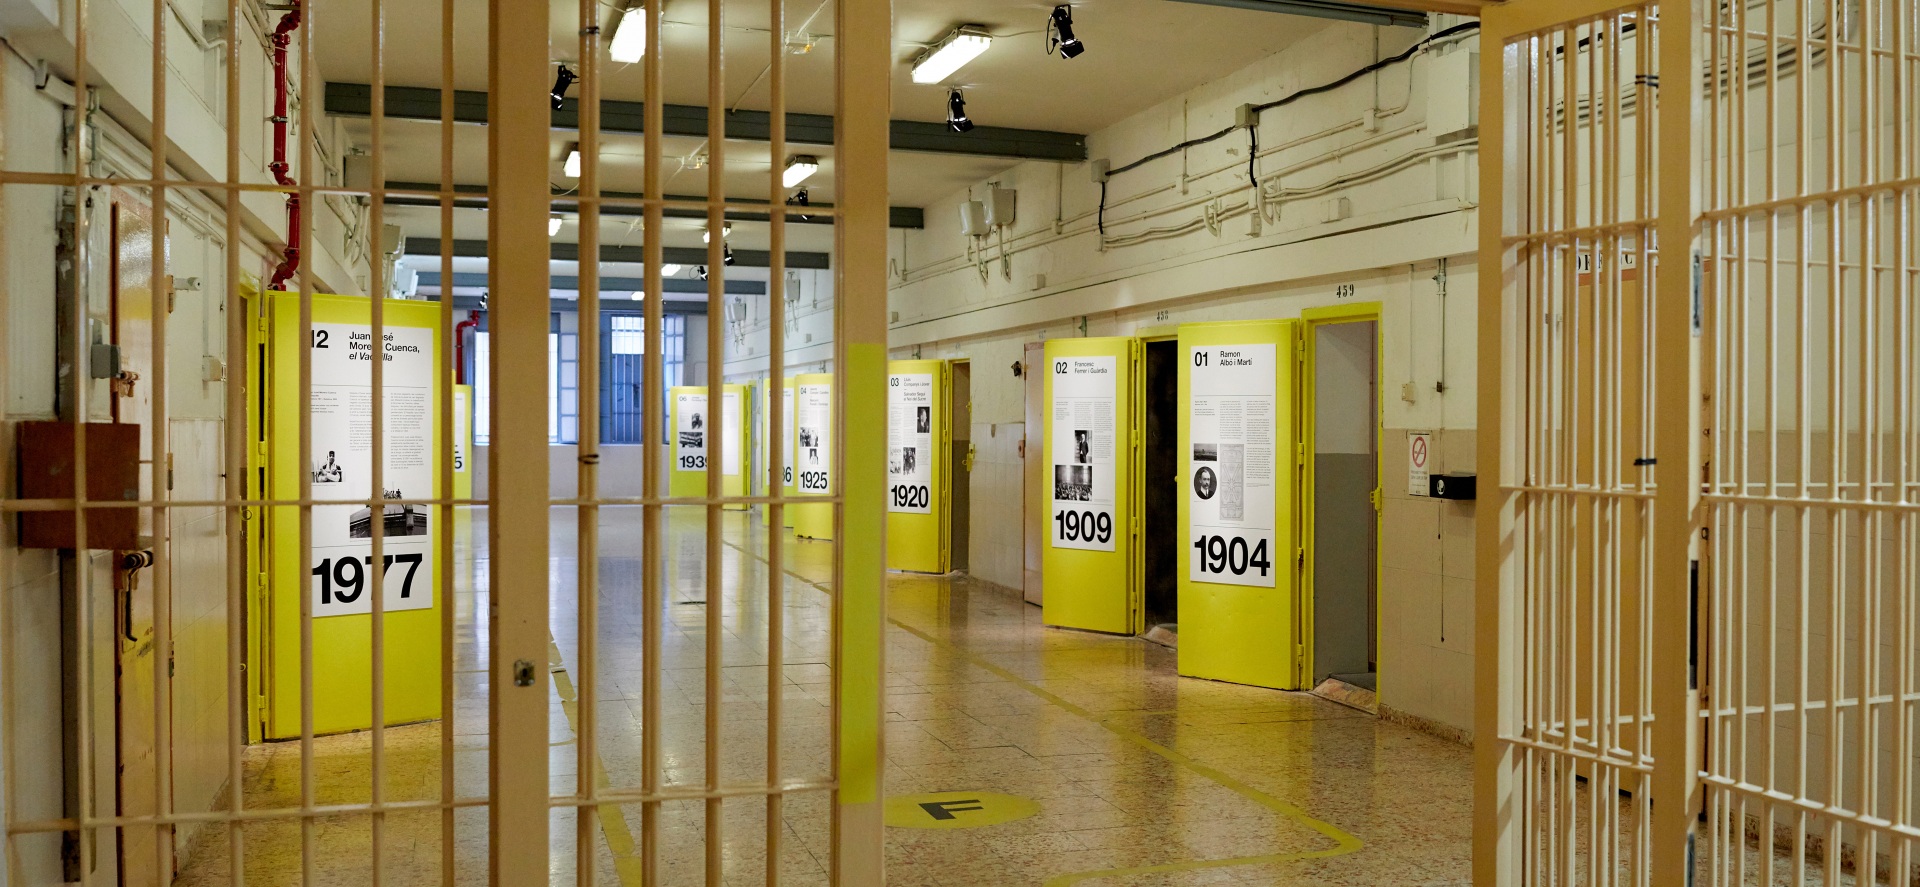 Visita museizada a la Presó Model. Galería 5, rejas de acceso y puertas amarillas.